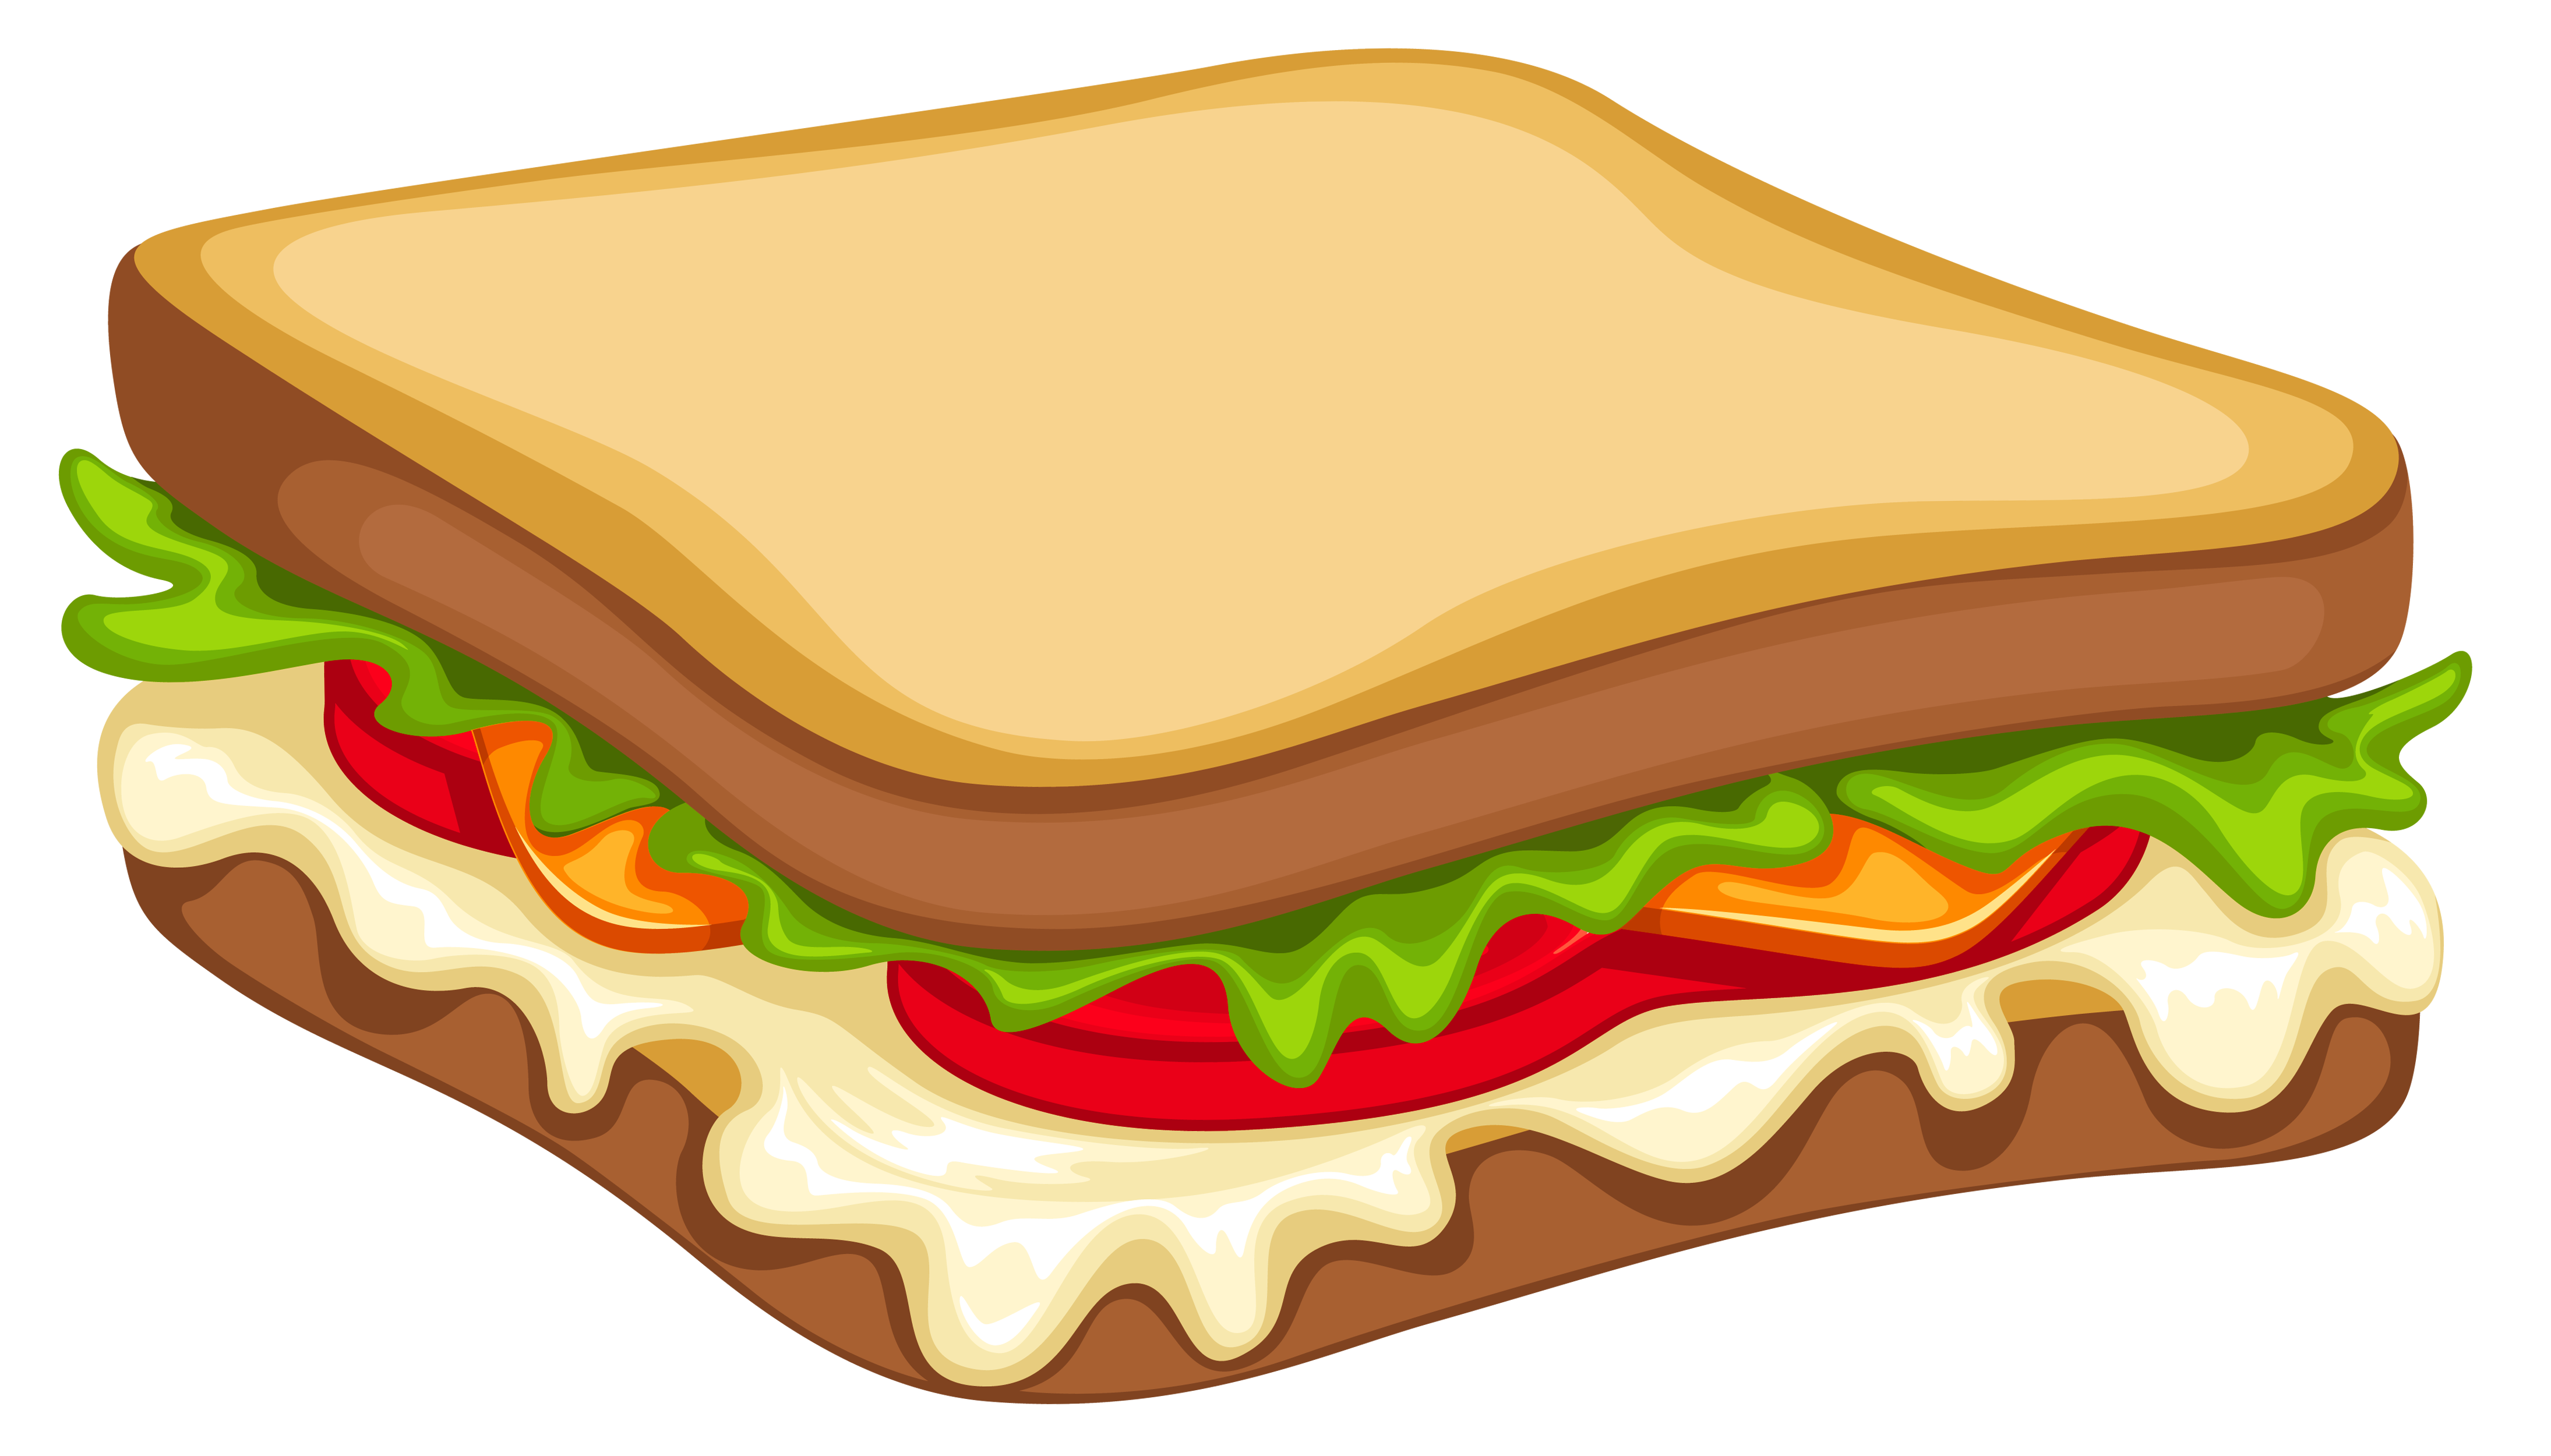 Sandwich clipart images